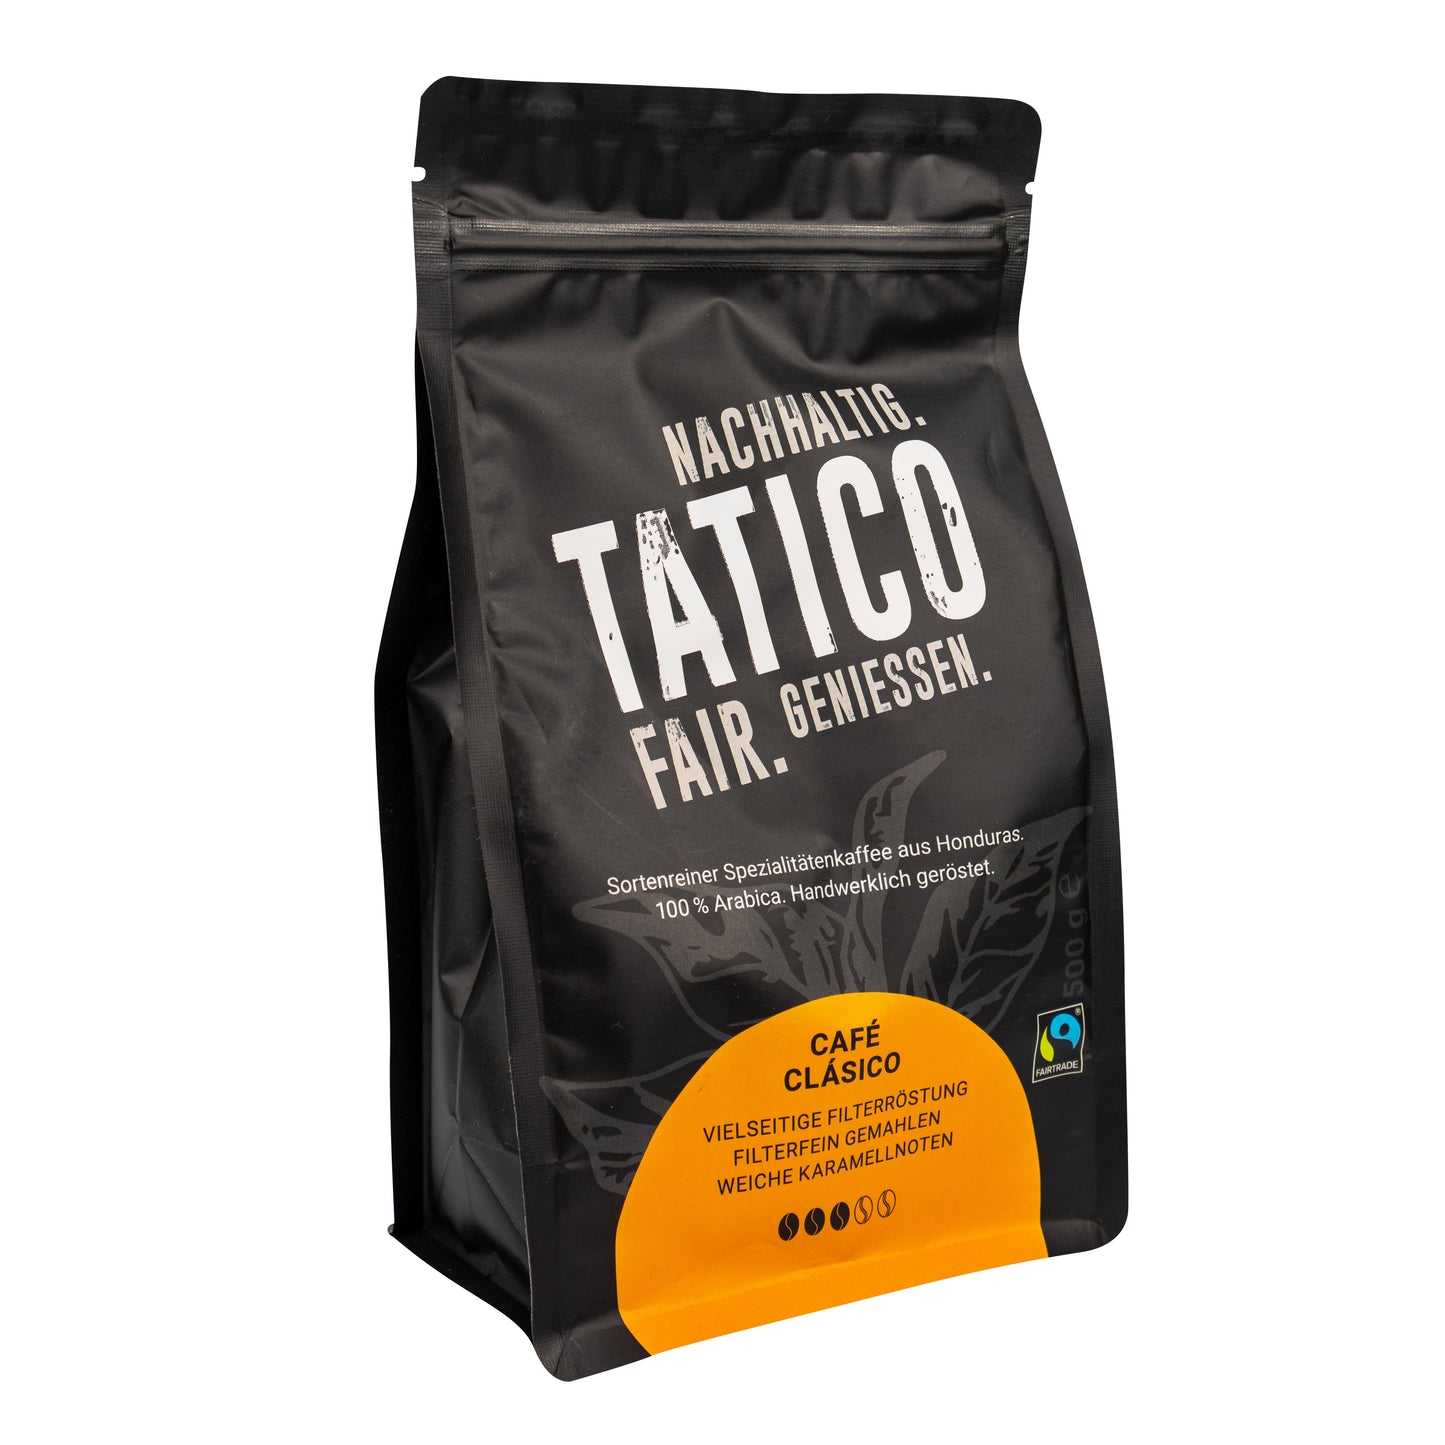 Tatico Café Clásico - Filterfein gemahlen